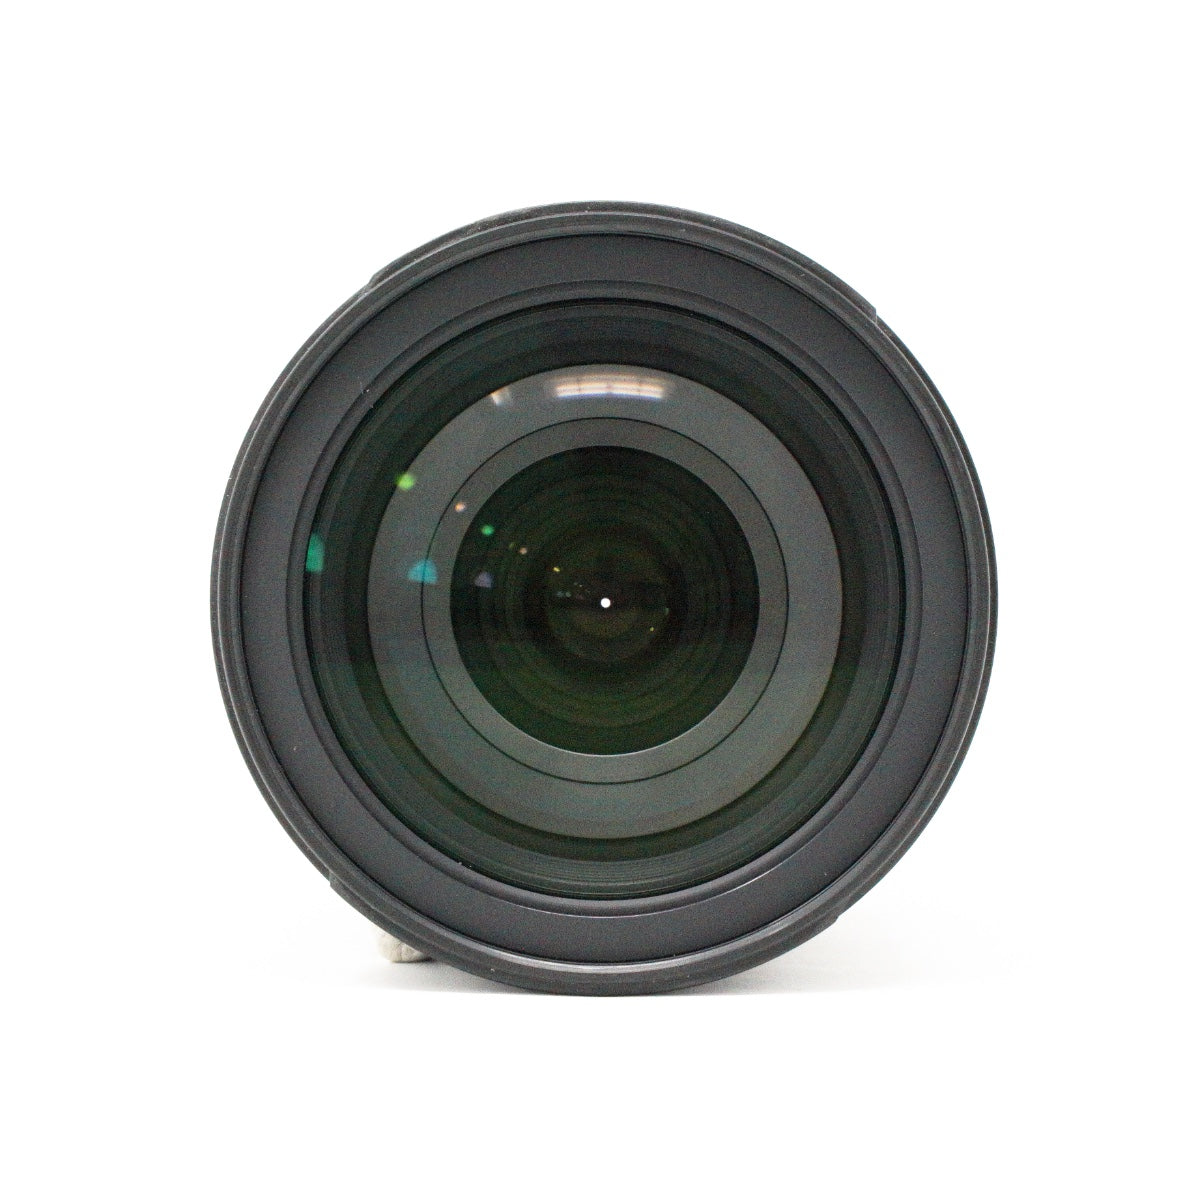 Used Nikon AF-S Nikkor 28-300mm F3.5/5.6G VR lens